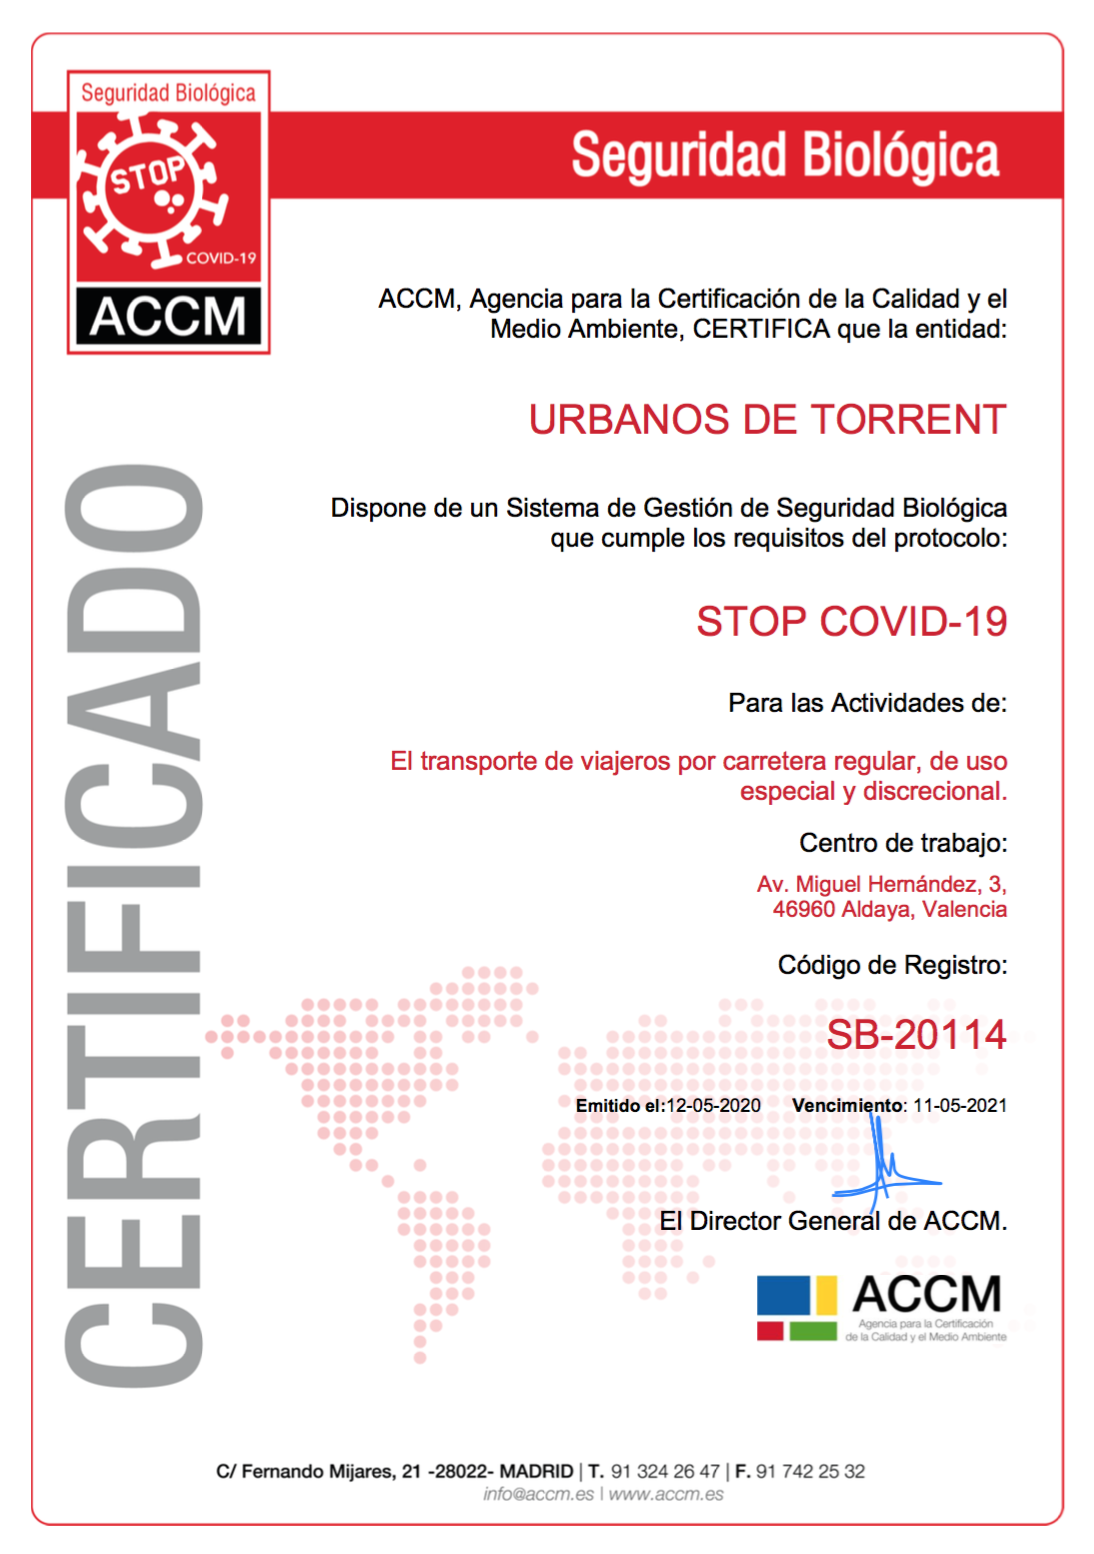 Torrent, primer municipio de España que cuenta con el Certificado de Seguridad Biológica COVID-19 para su transporte urbano  